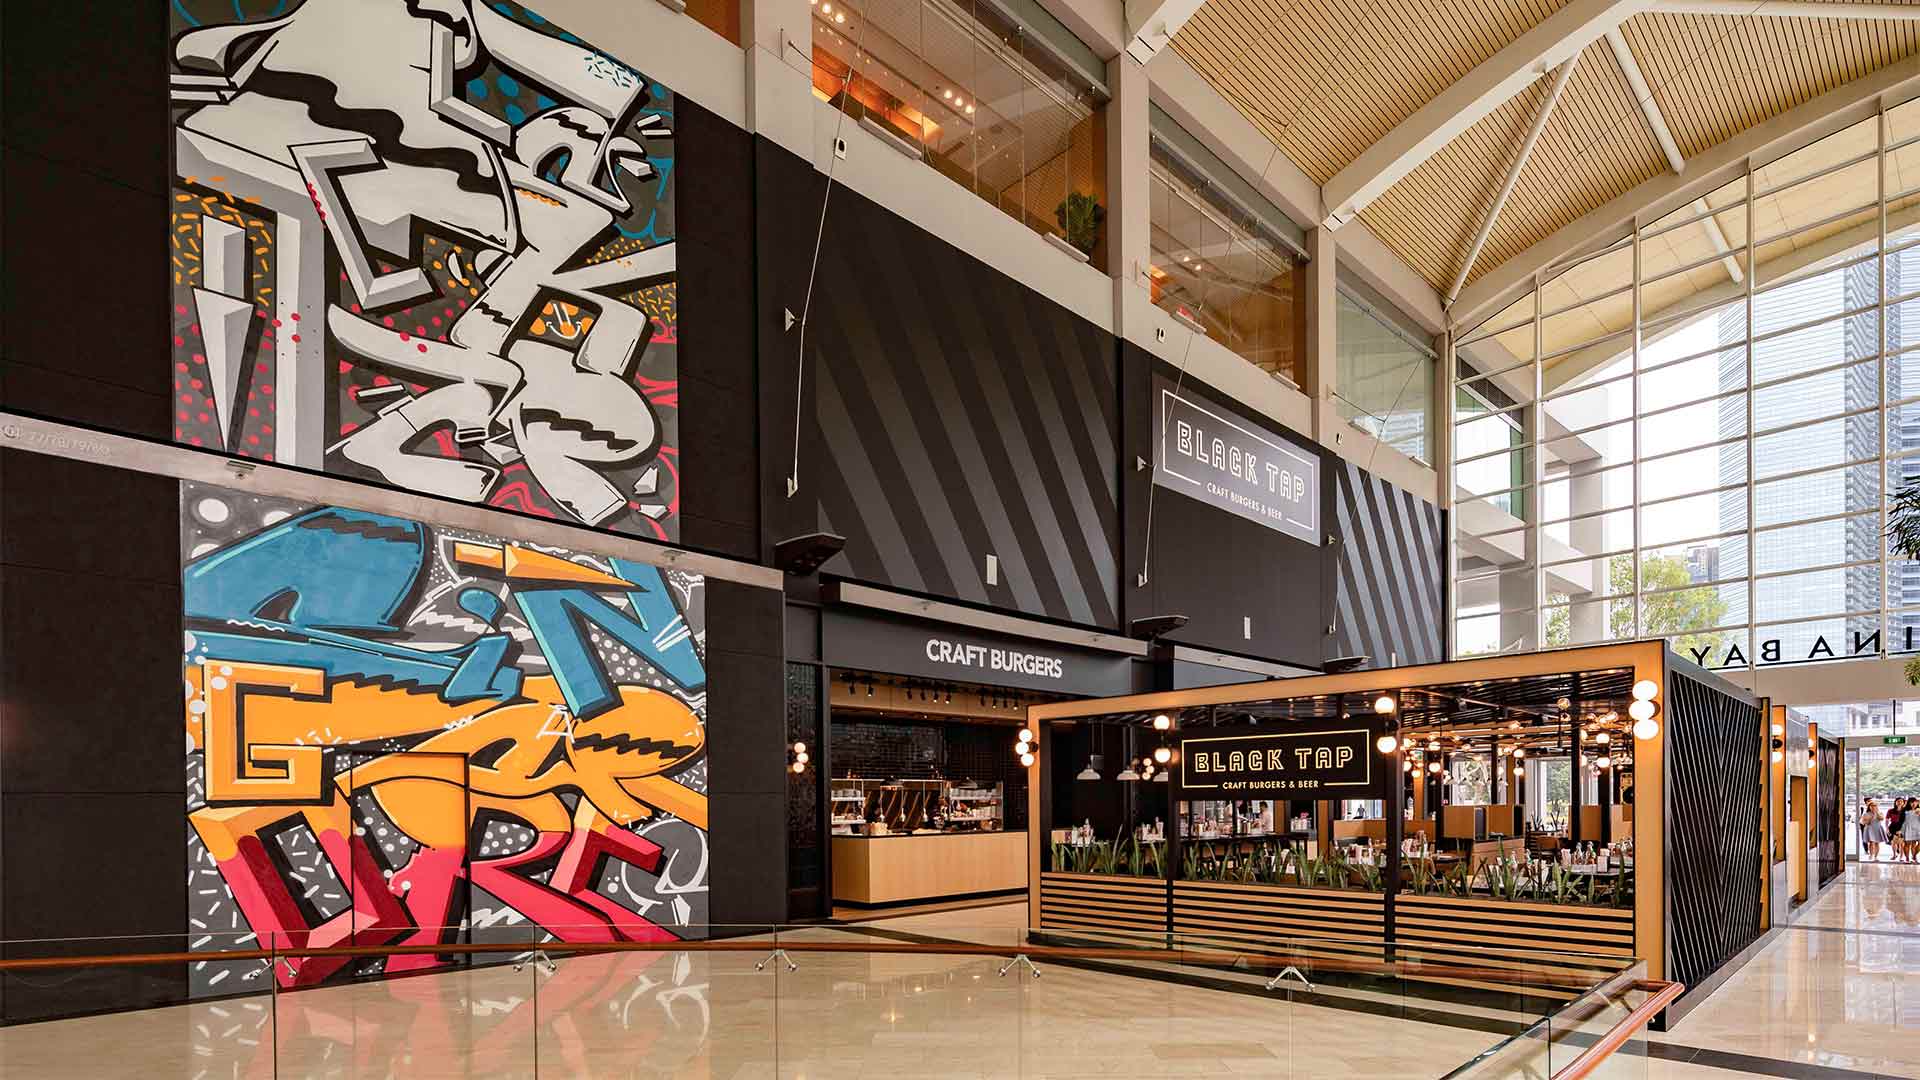 싱가포르에서 프라이빗 다이닝 및 이벤트를 개최할 수 있는 레스토랑 Black Tap의 매장 전경